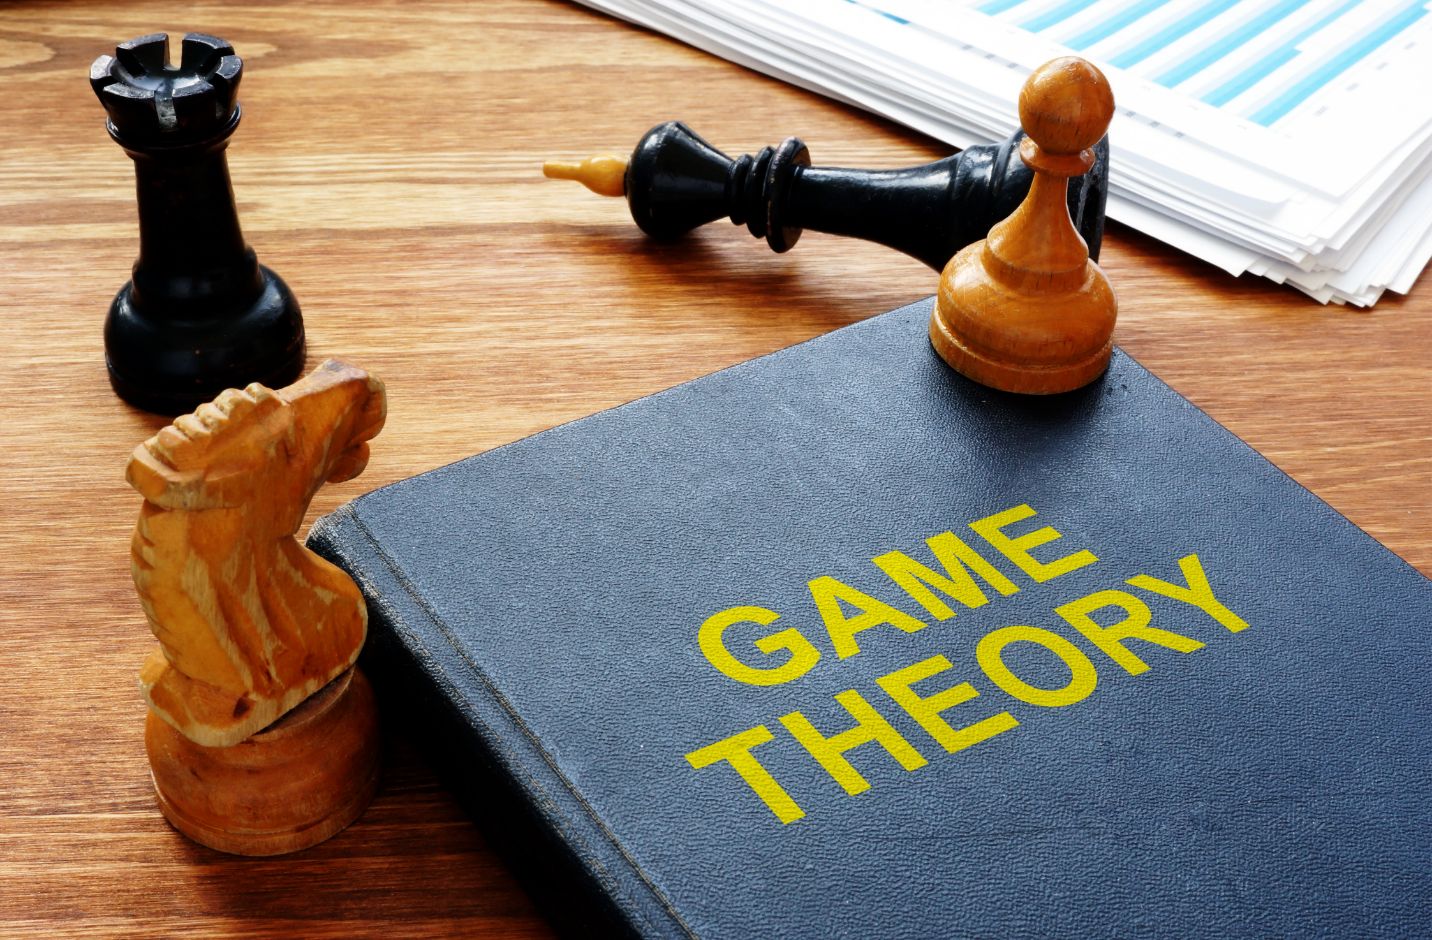 [Series Kiến thức quản lý tài chính cá nhân] Lý thuyết game và ứng dụng trong kinh doanh.